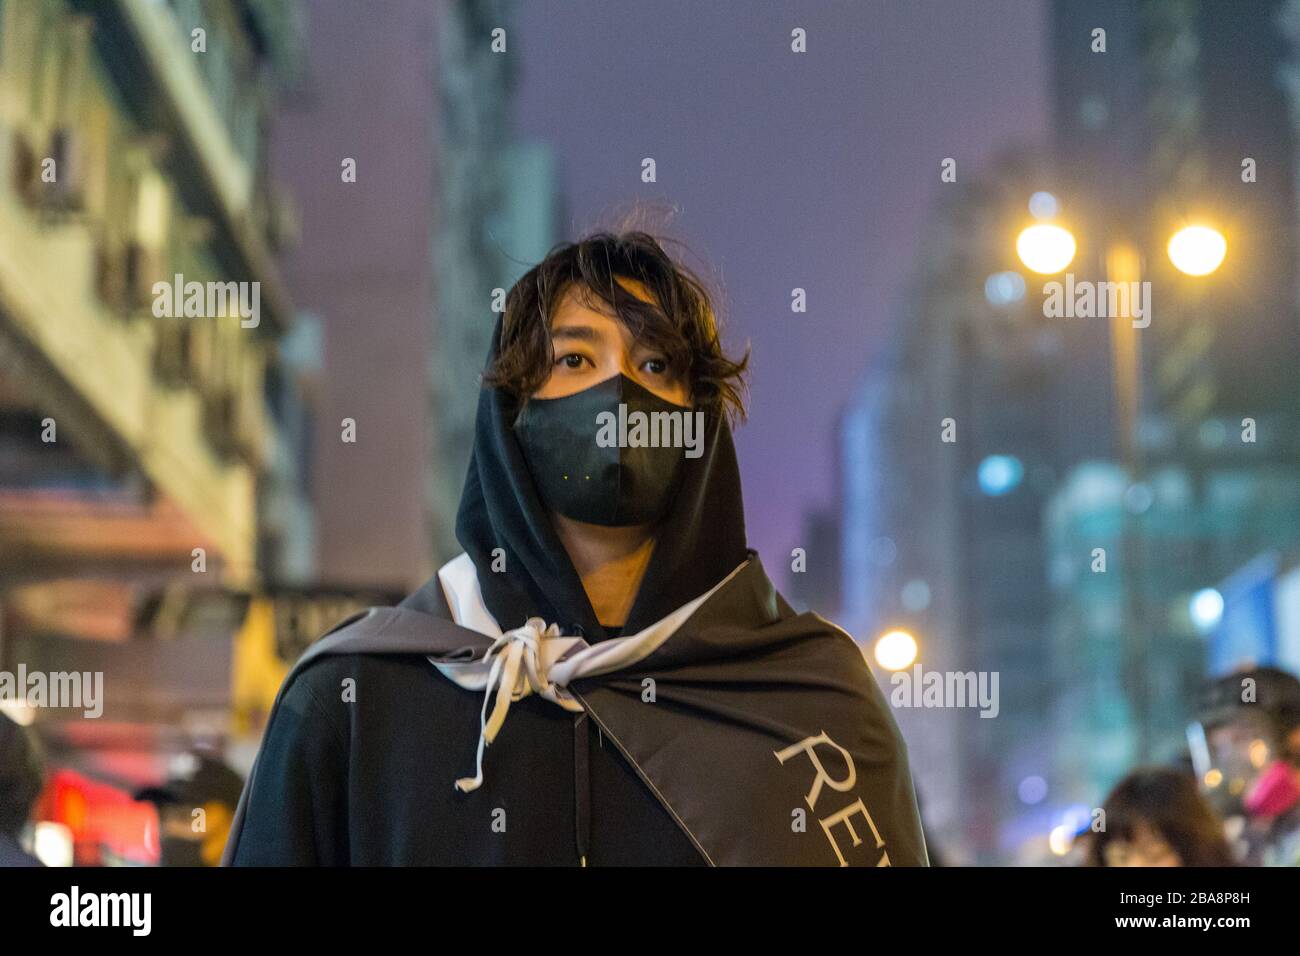 Manifestation de Hong Kong Saint-Sylvestre 2019 - Monkok & Tsim Sha Tsui 31.01.2019 Banque D'Images